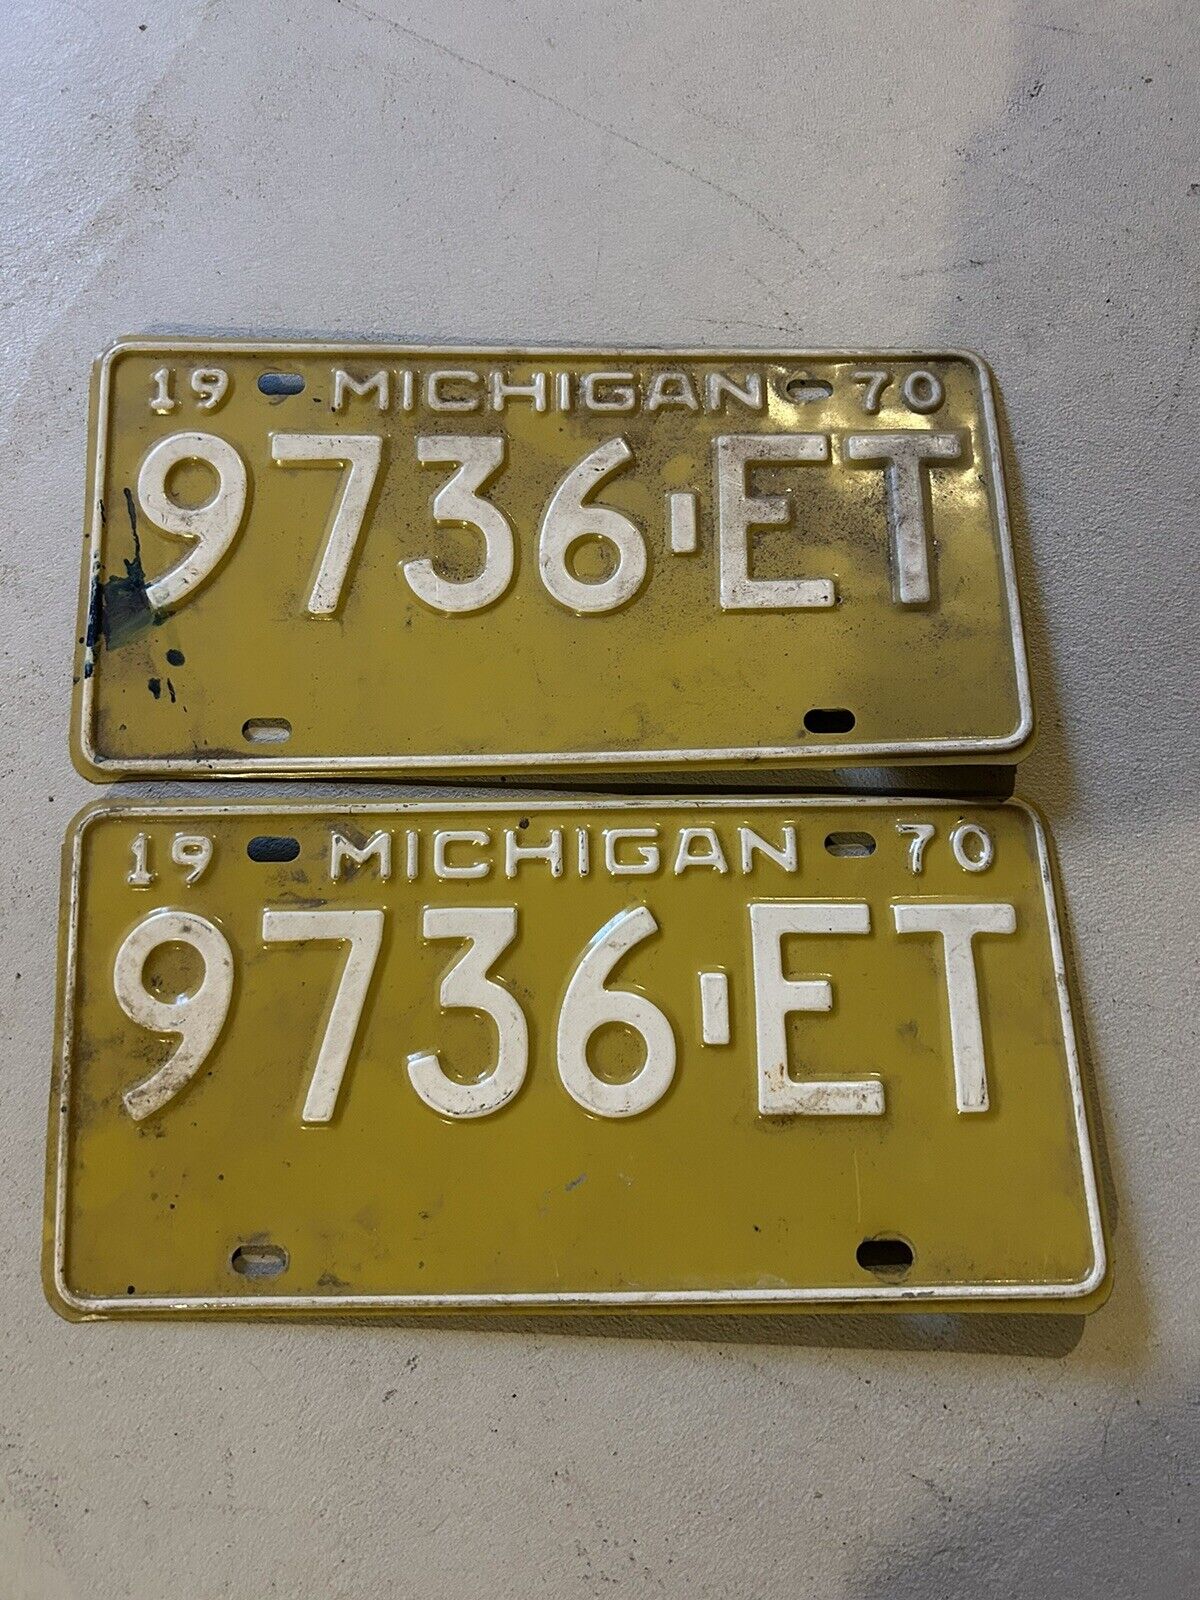 1970 Michigan License Plate Matching Set Vintage